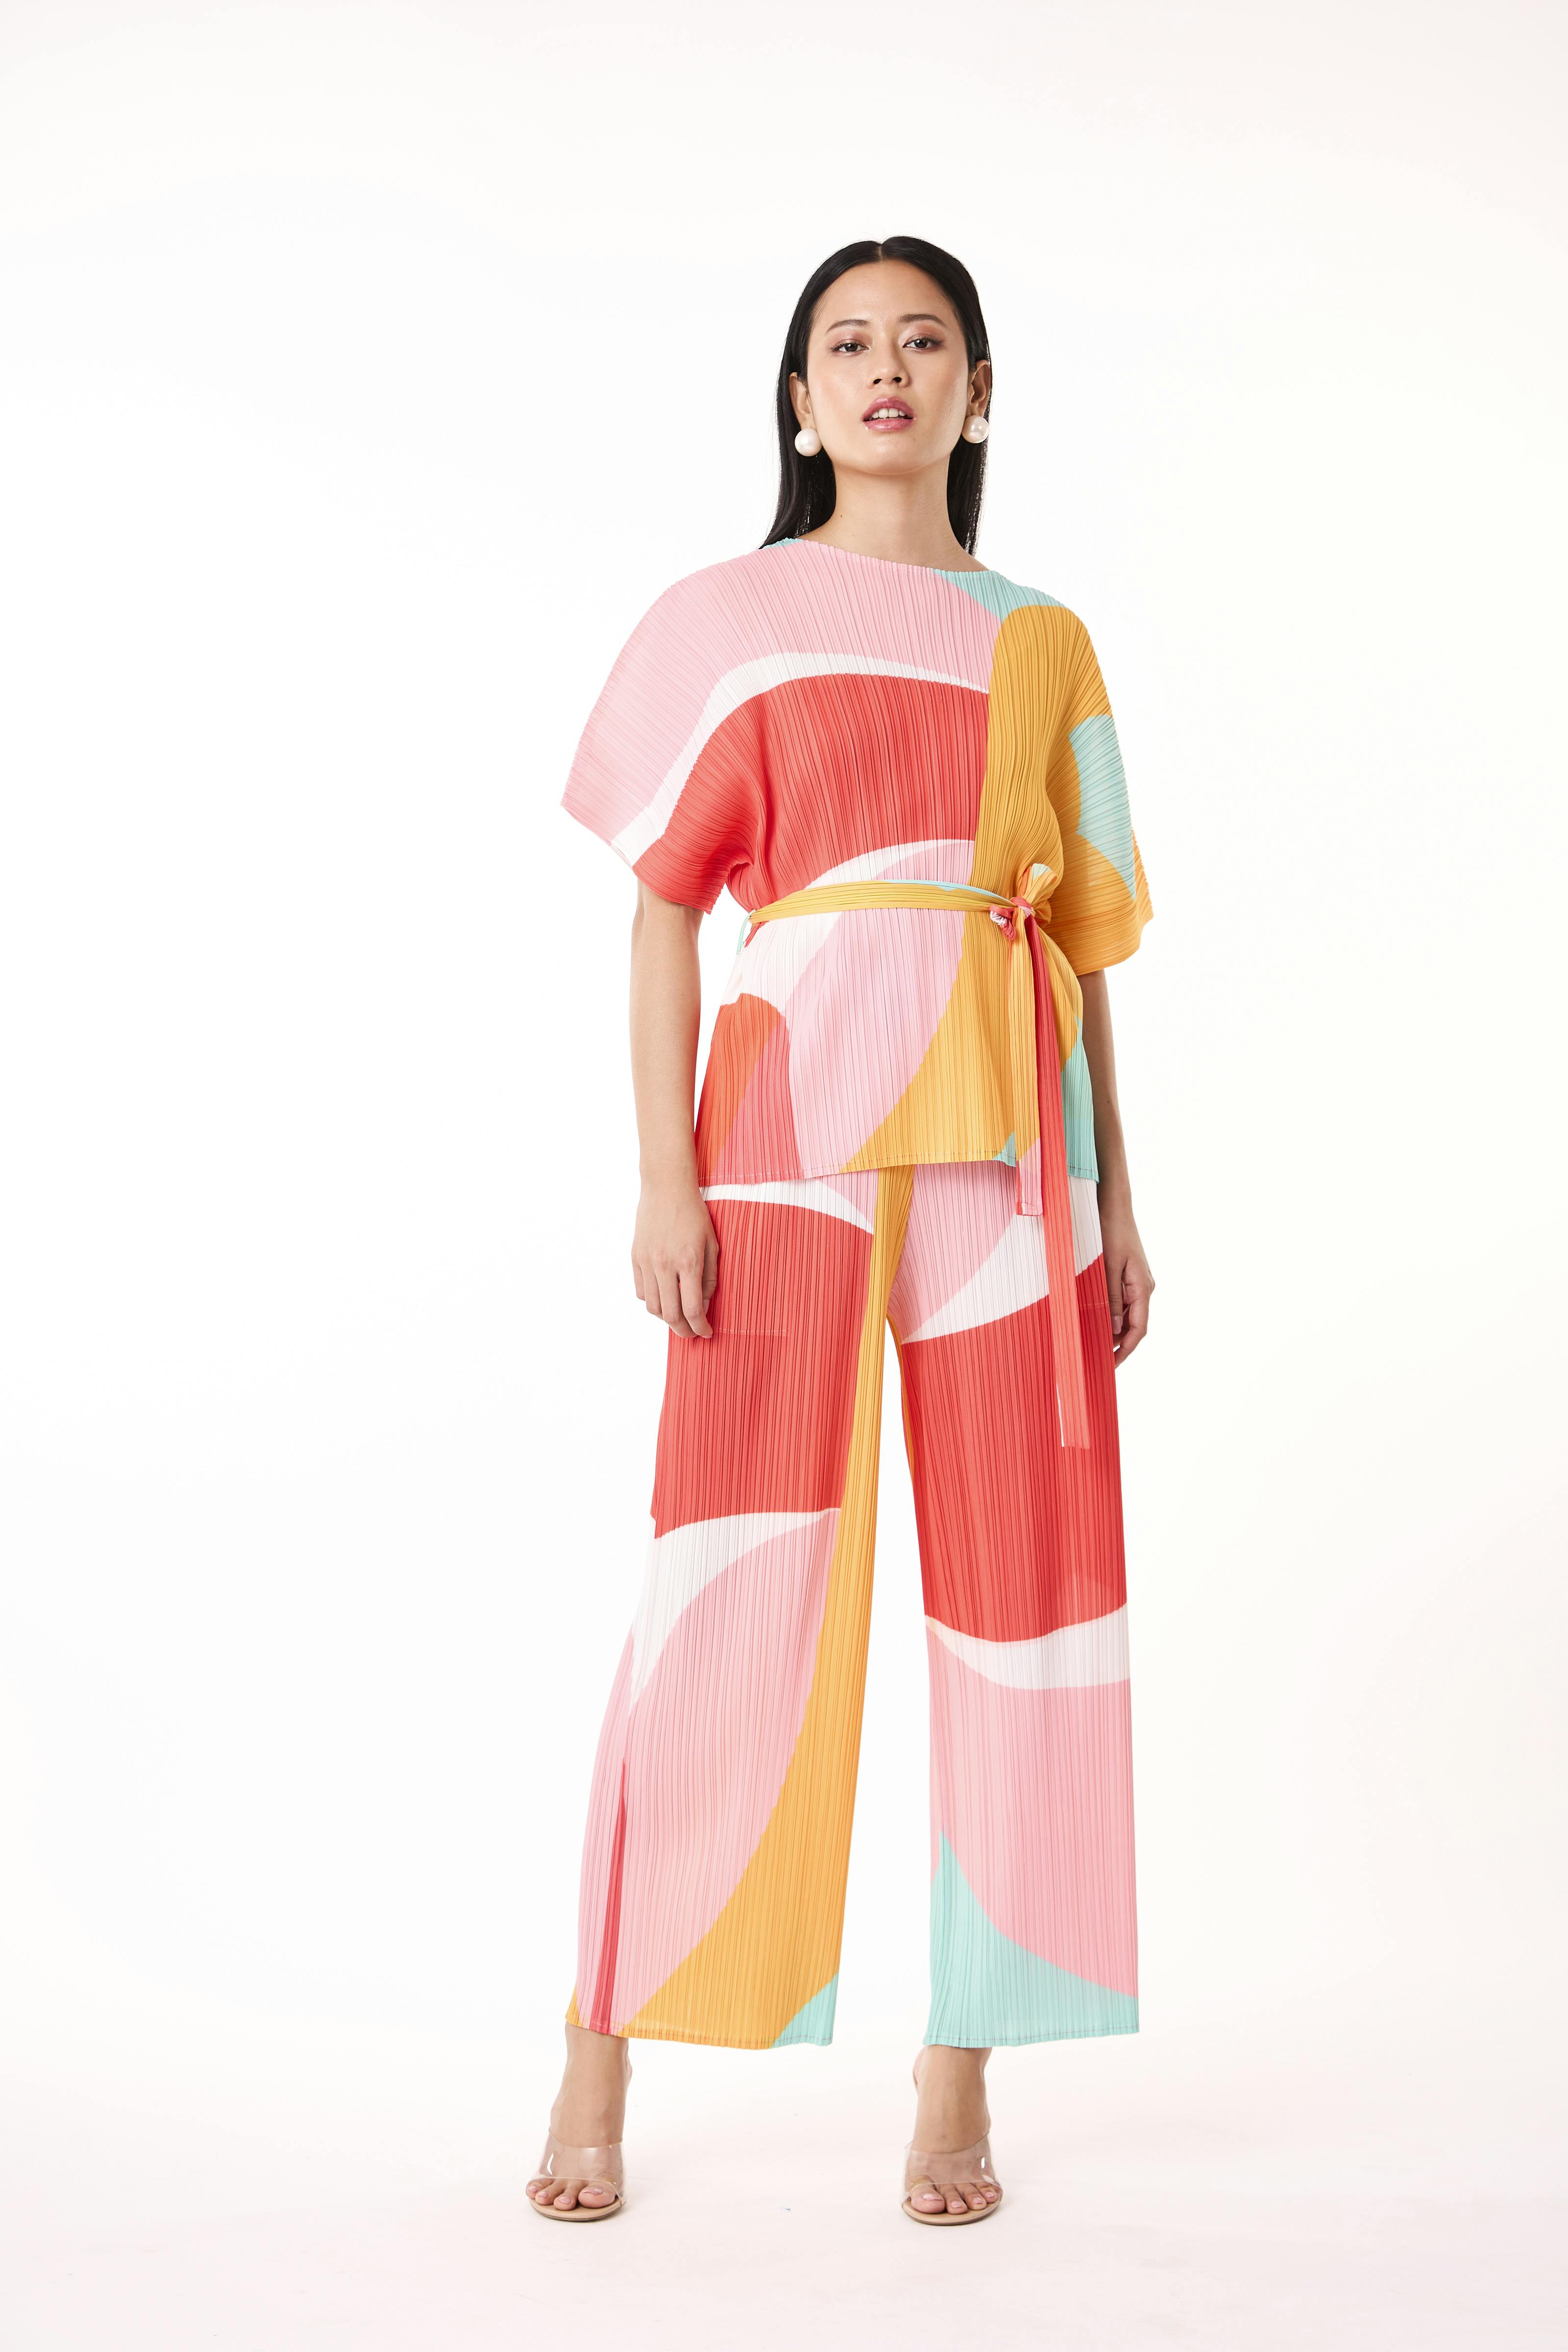 Francesca Set - Multicolour, a product by Scarlet Sage